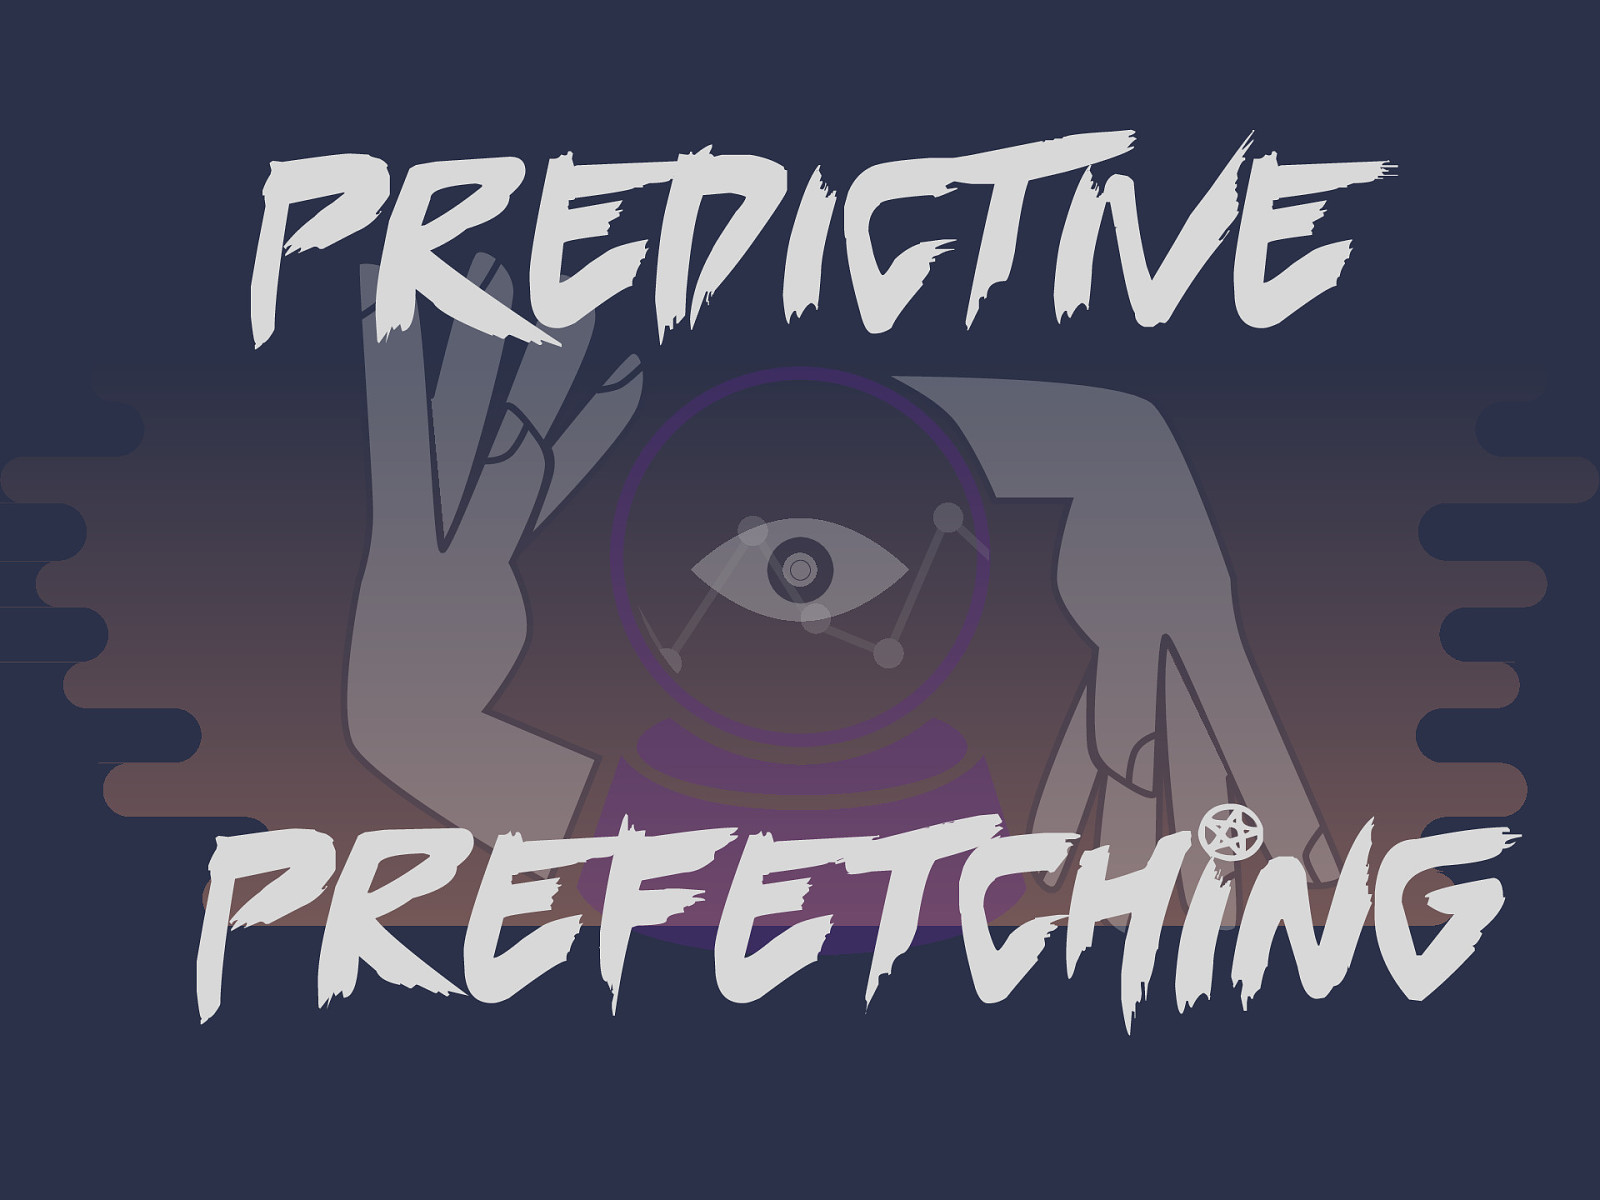 Predictive Prefetching